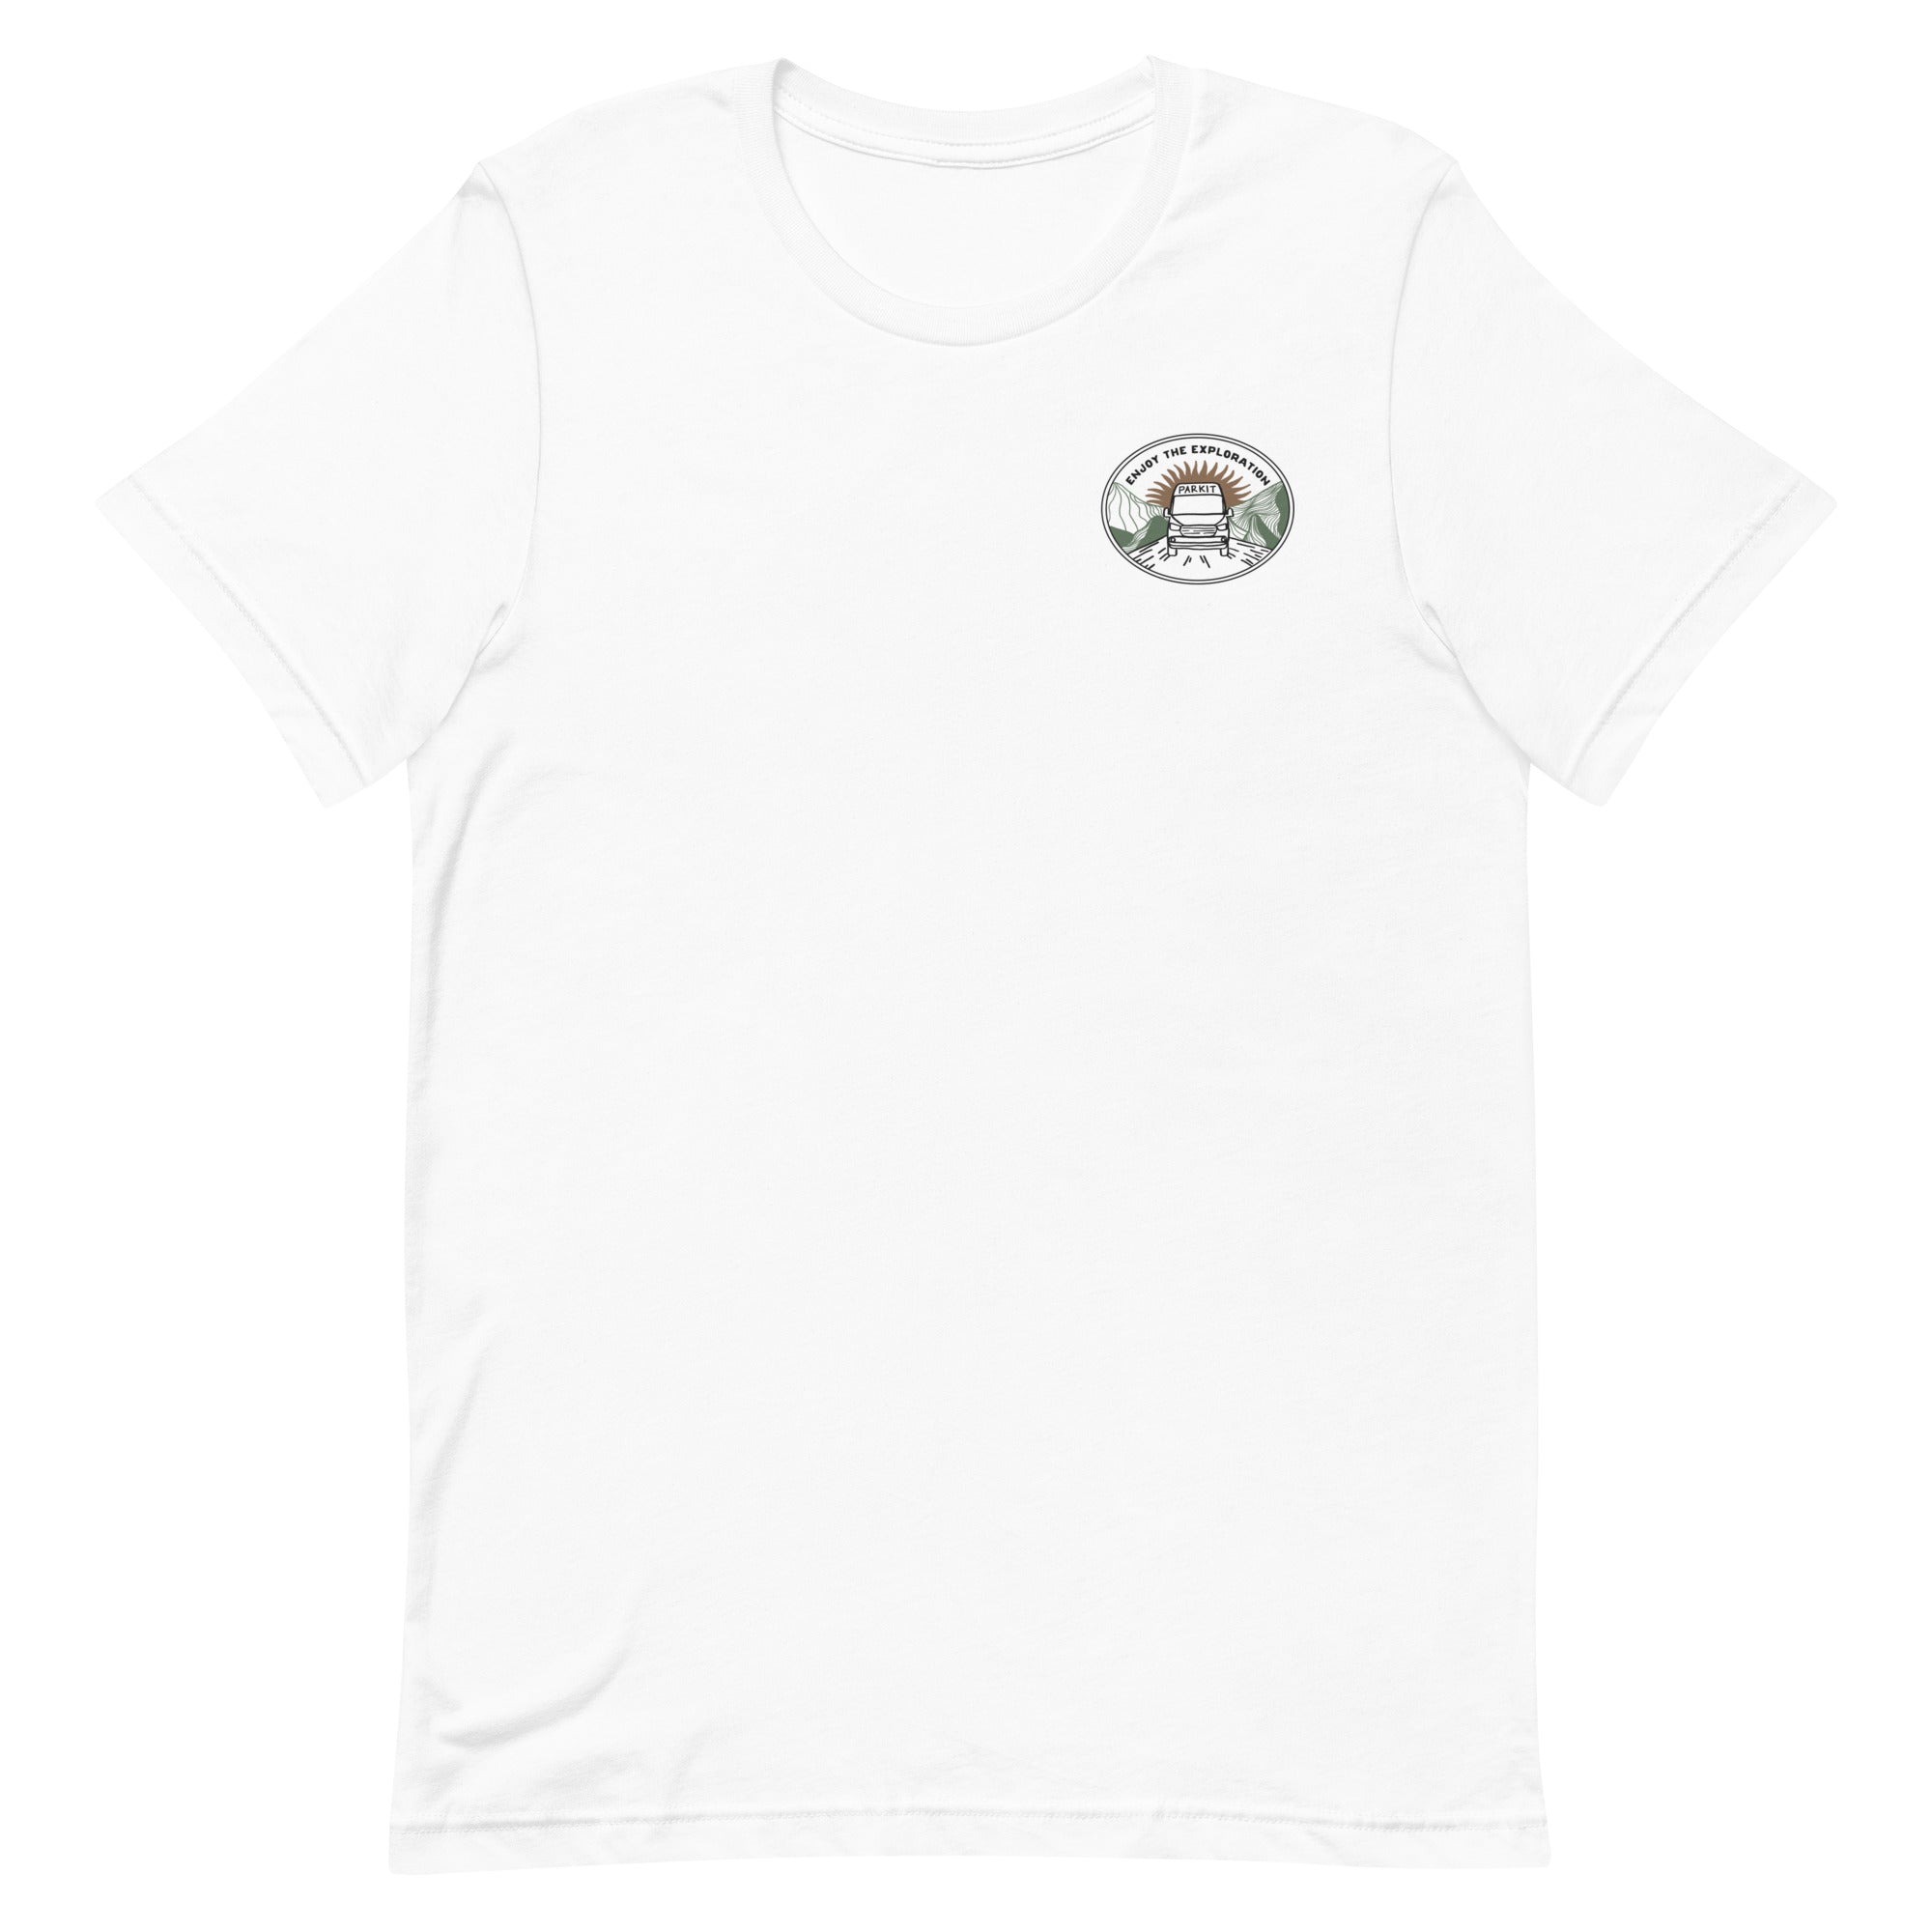 unisex-staple-t-shirt-white-front-643c5f3820bc6.jpg